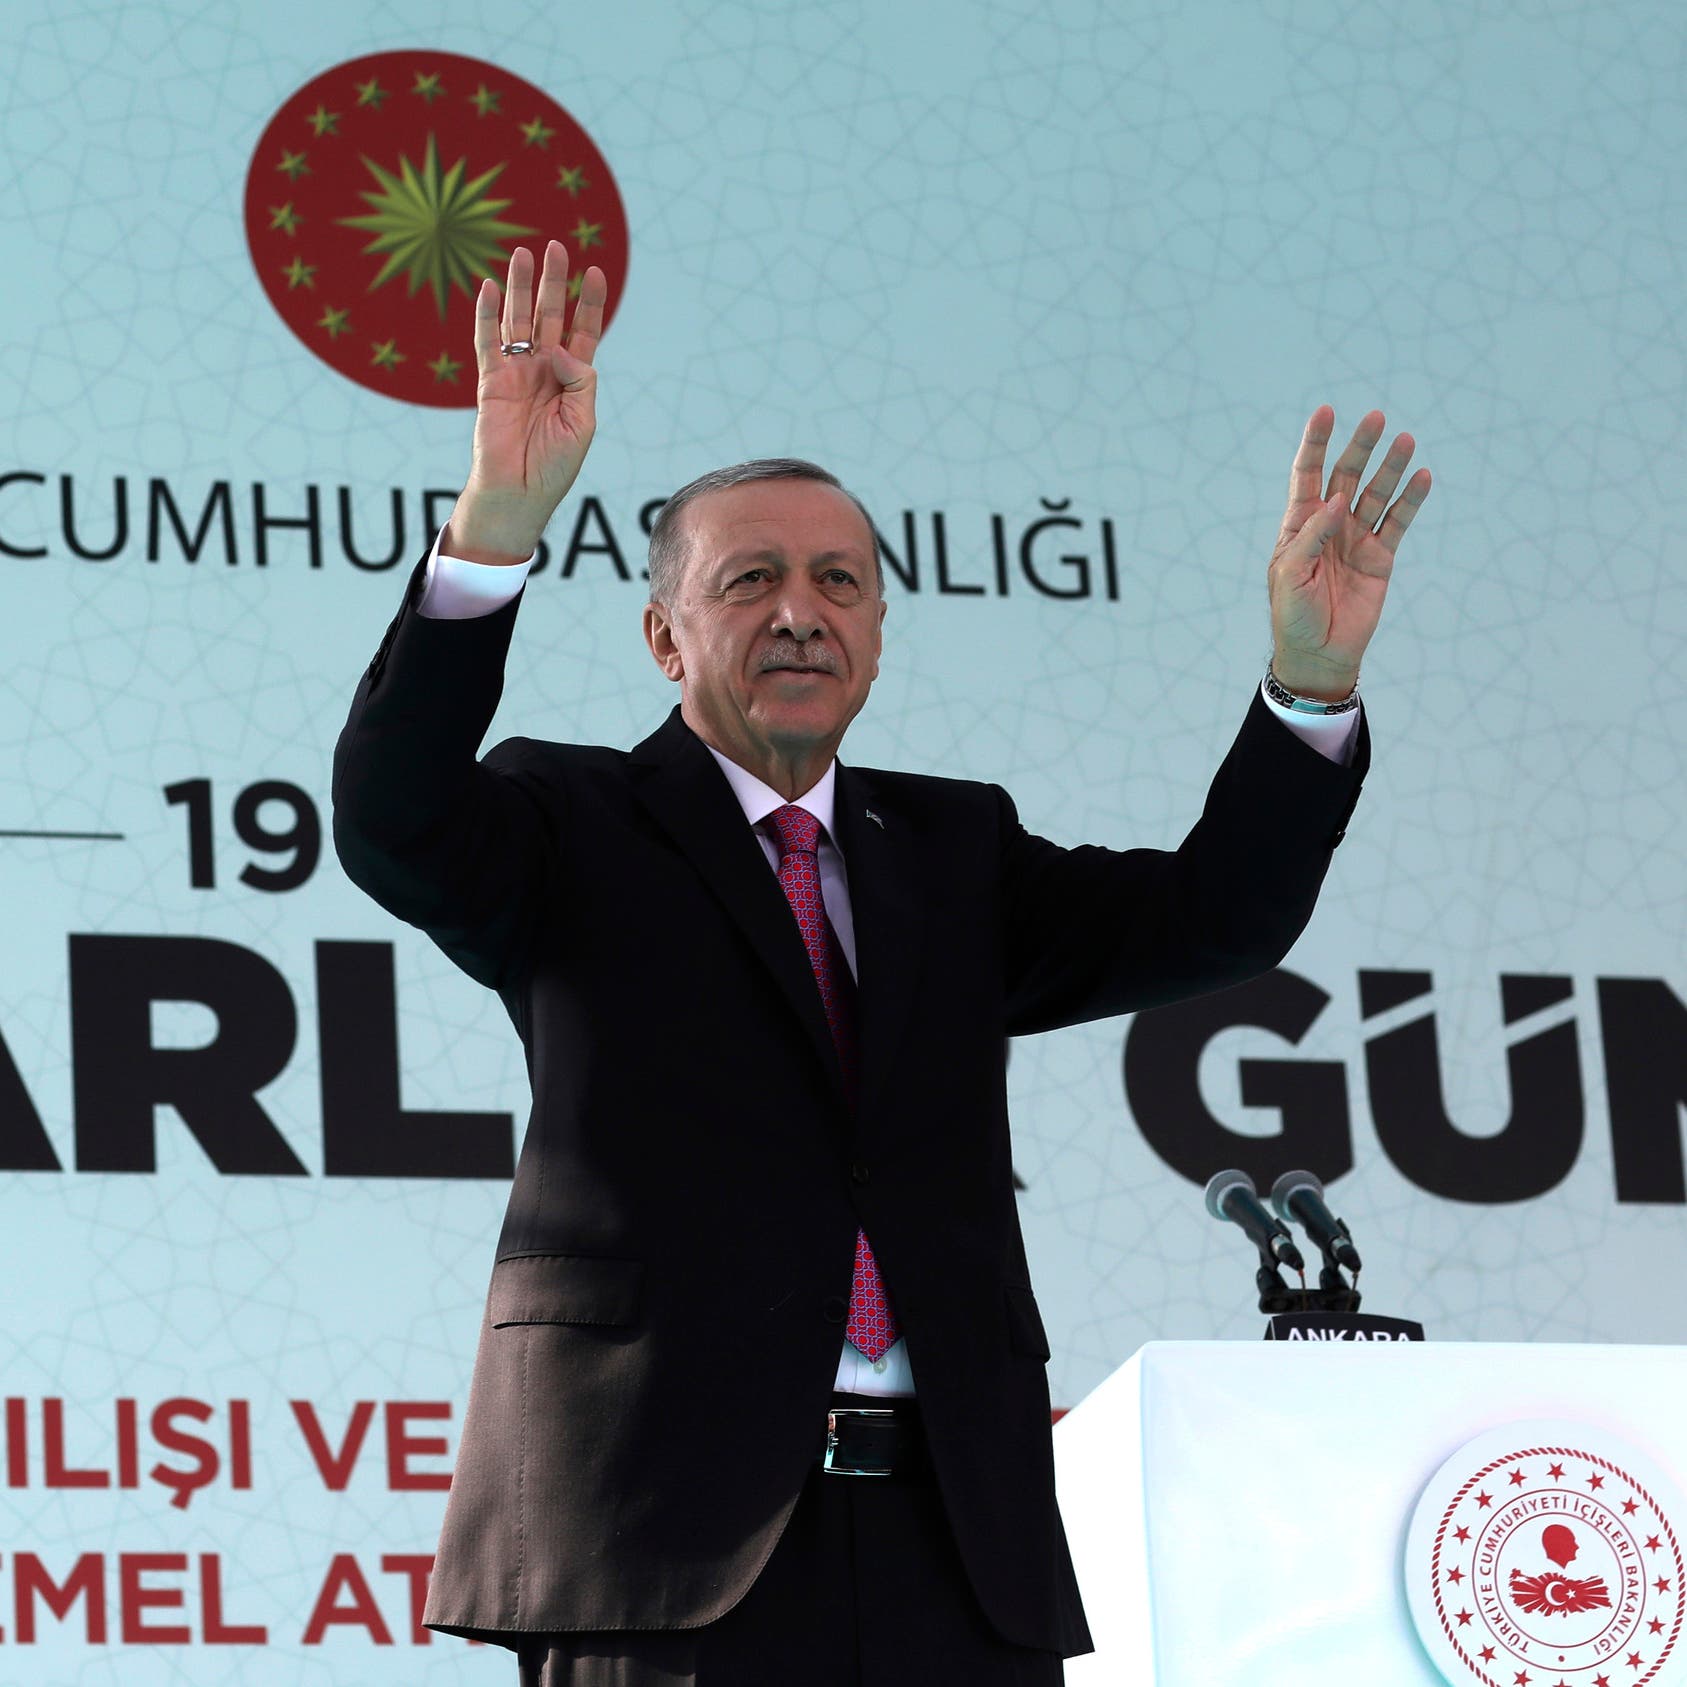 ماذا قصد أردوغان بـ"السلام سيعم ديار بكر والعراق وسوريا".. خبير يوضح